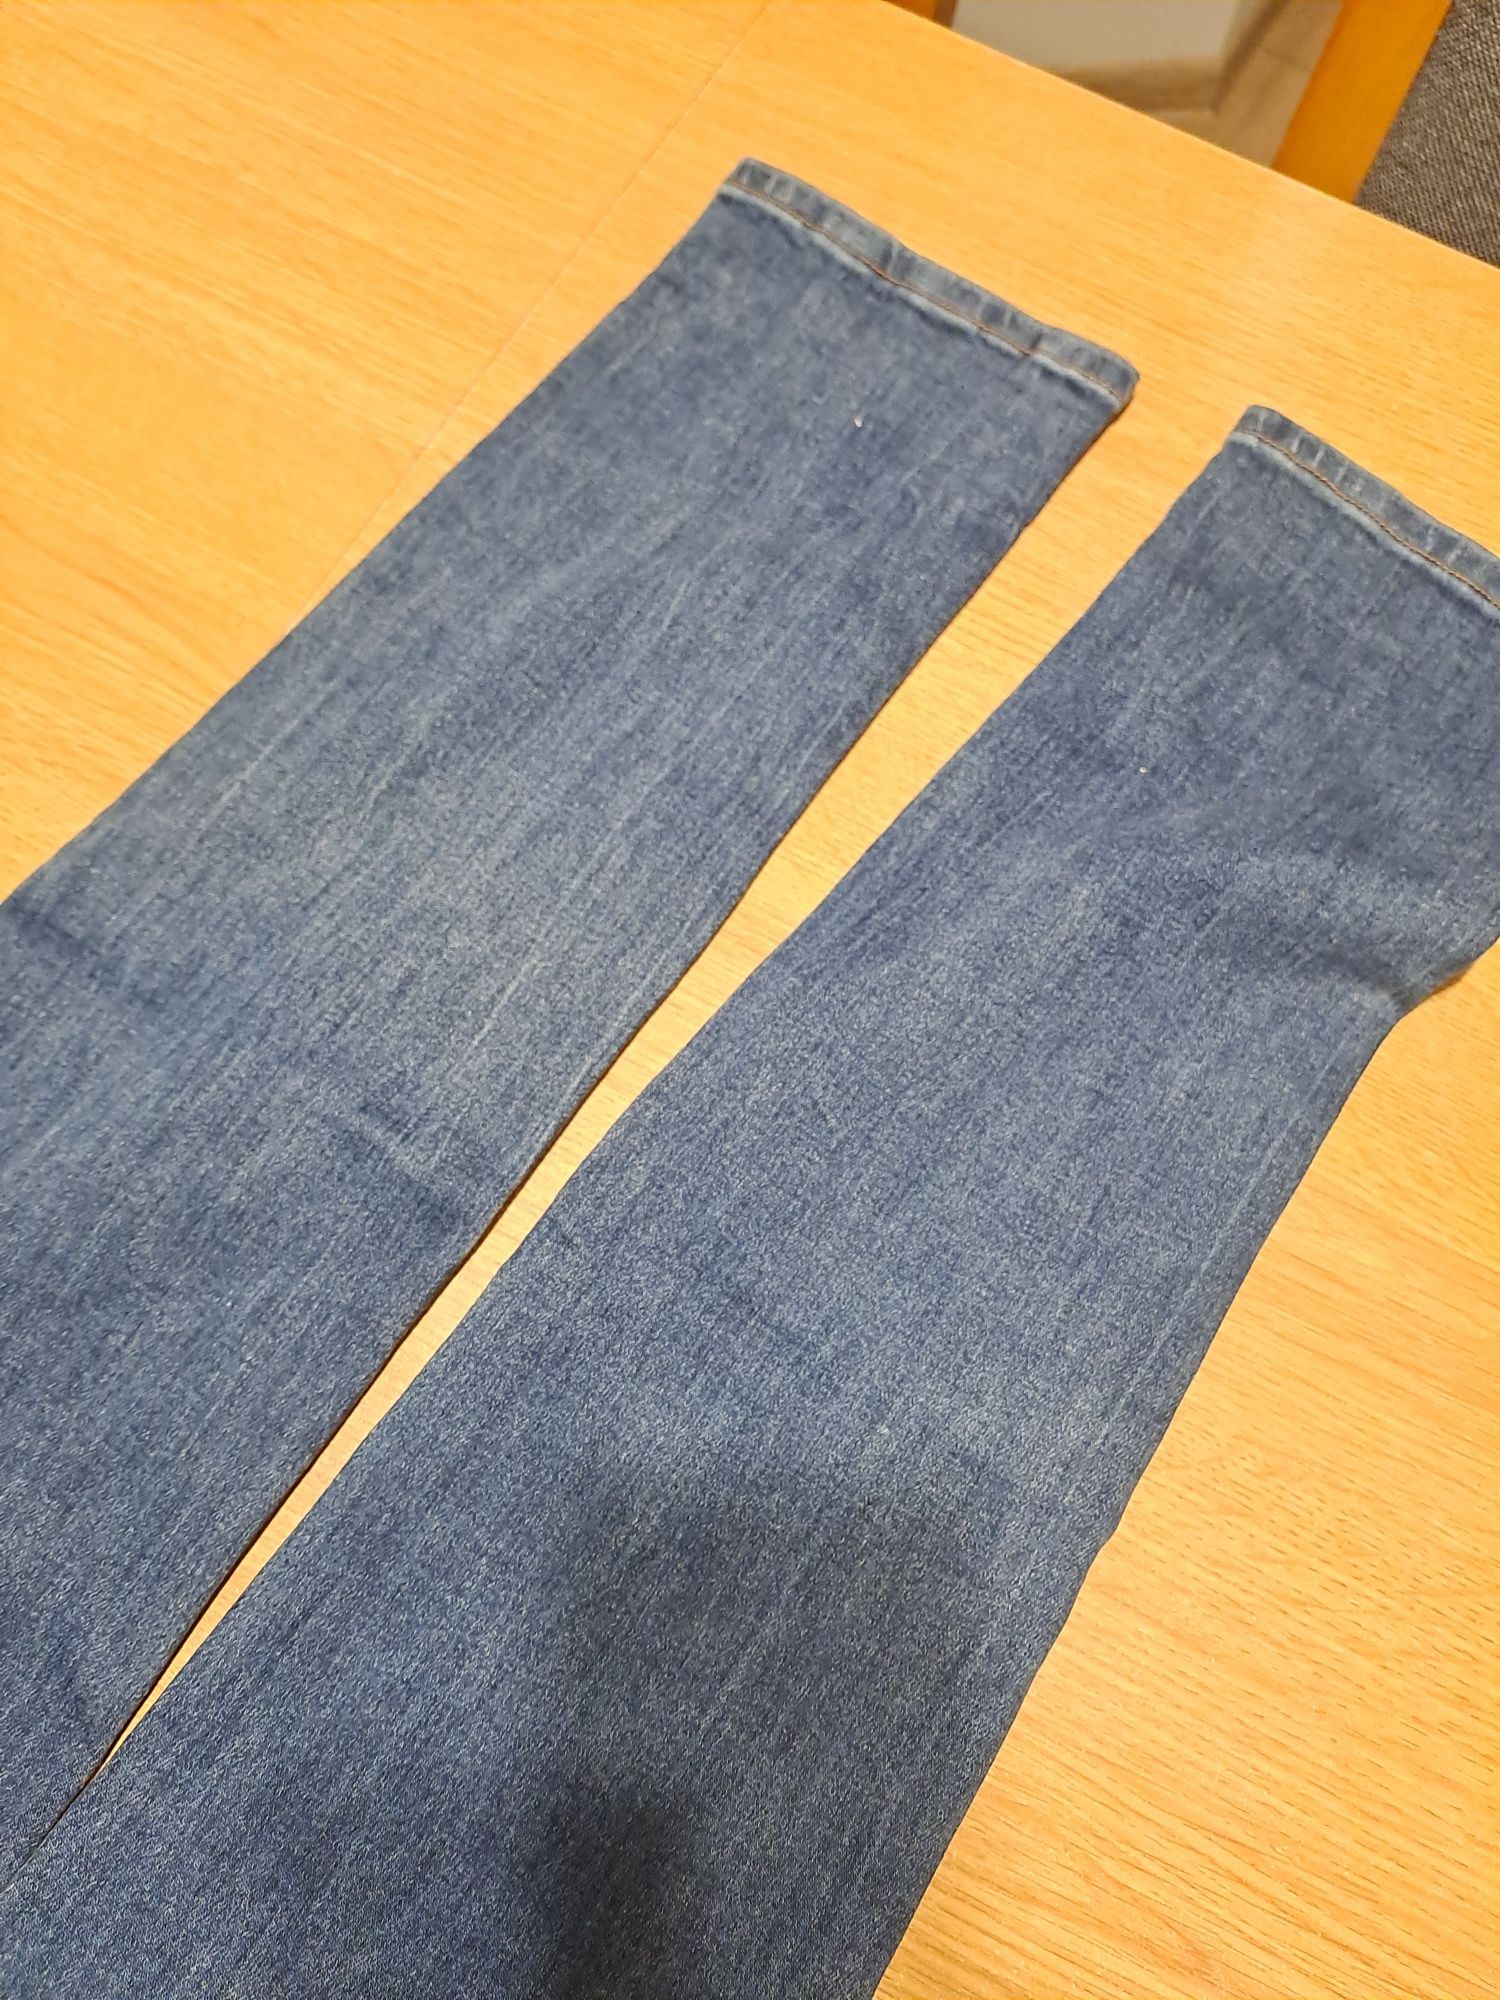 Spodnie, spodnie jeans r 34, xs